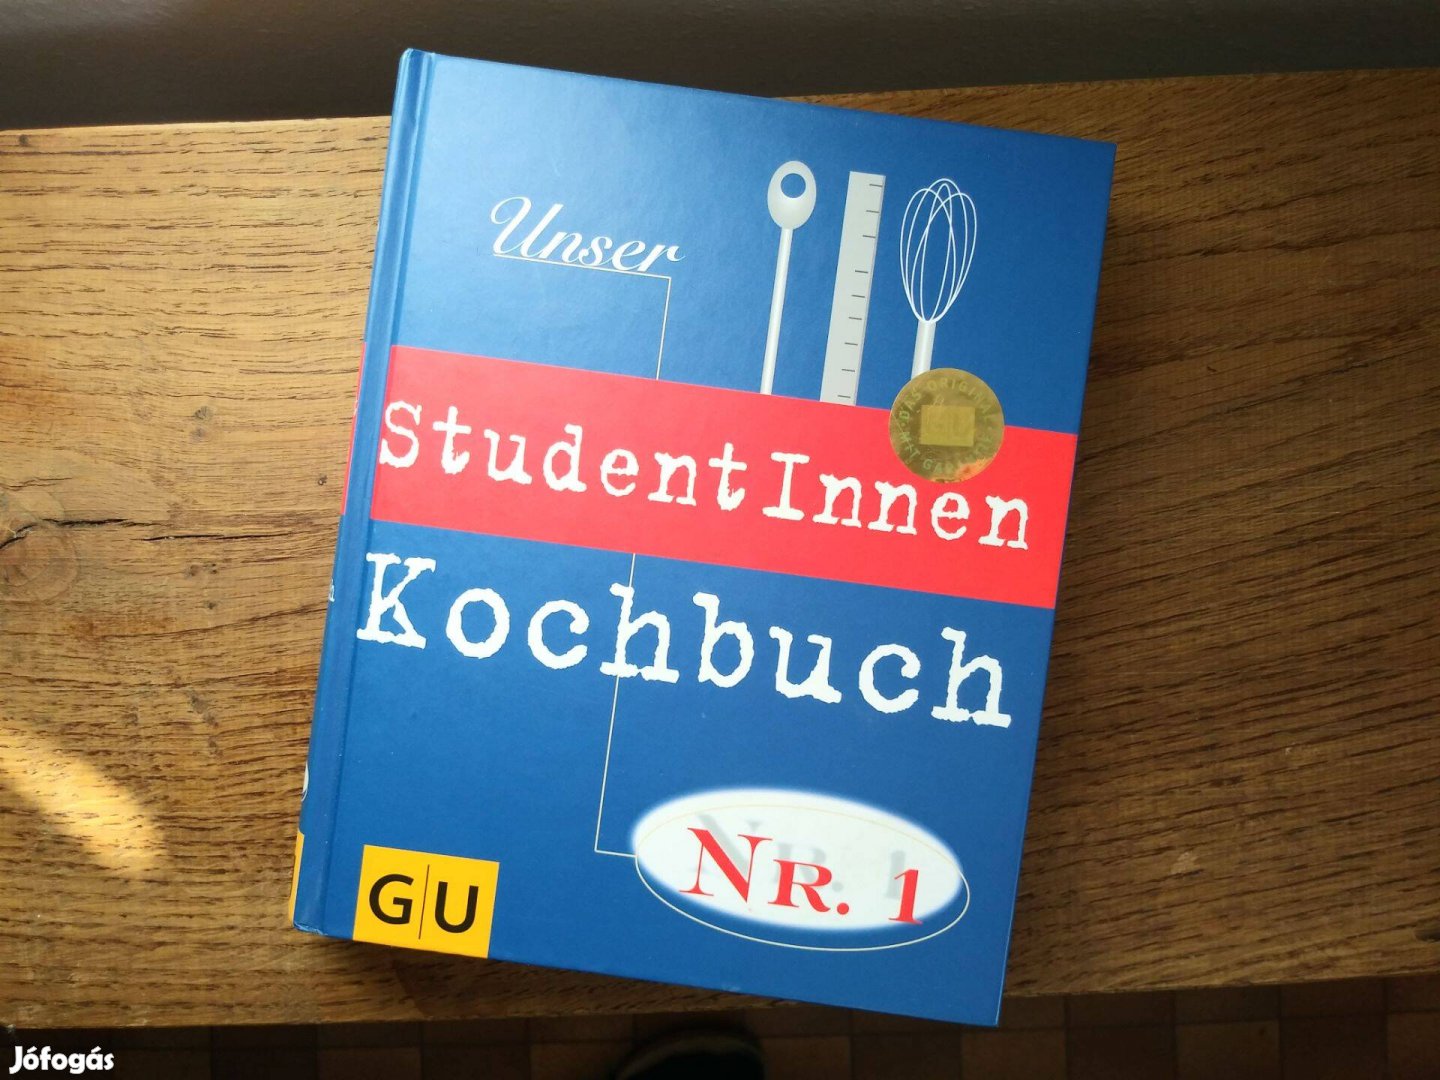 Unser Studentinnen Kochbuch - német nyelvű alapszakácskönyv